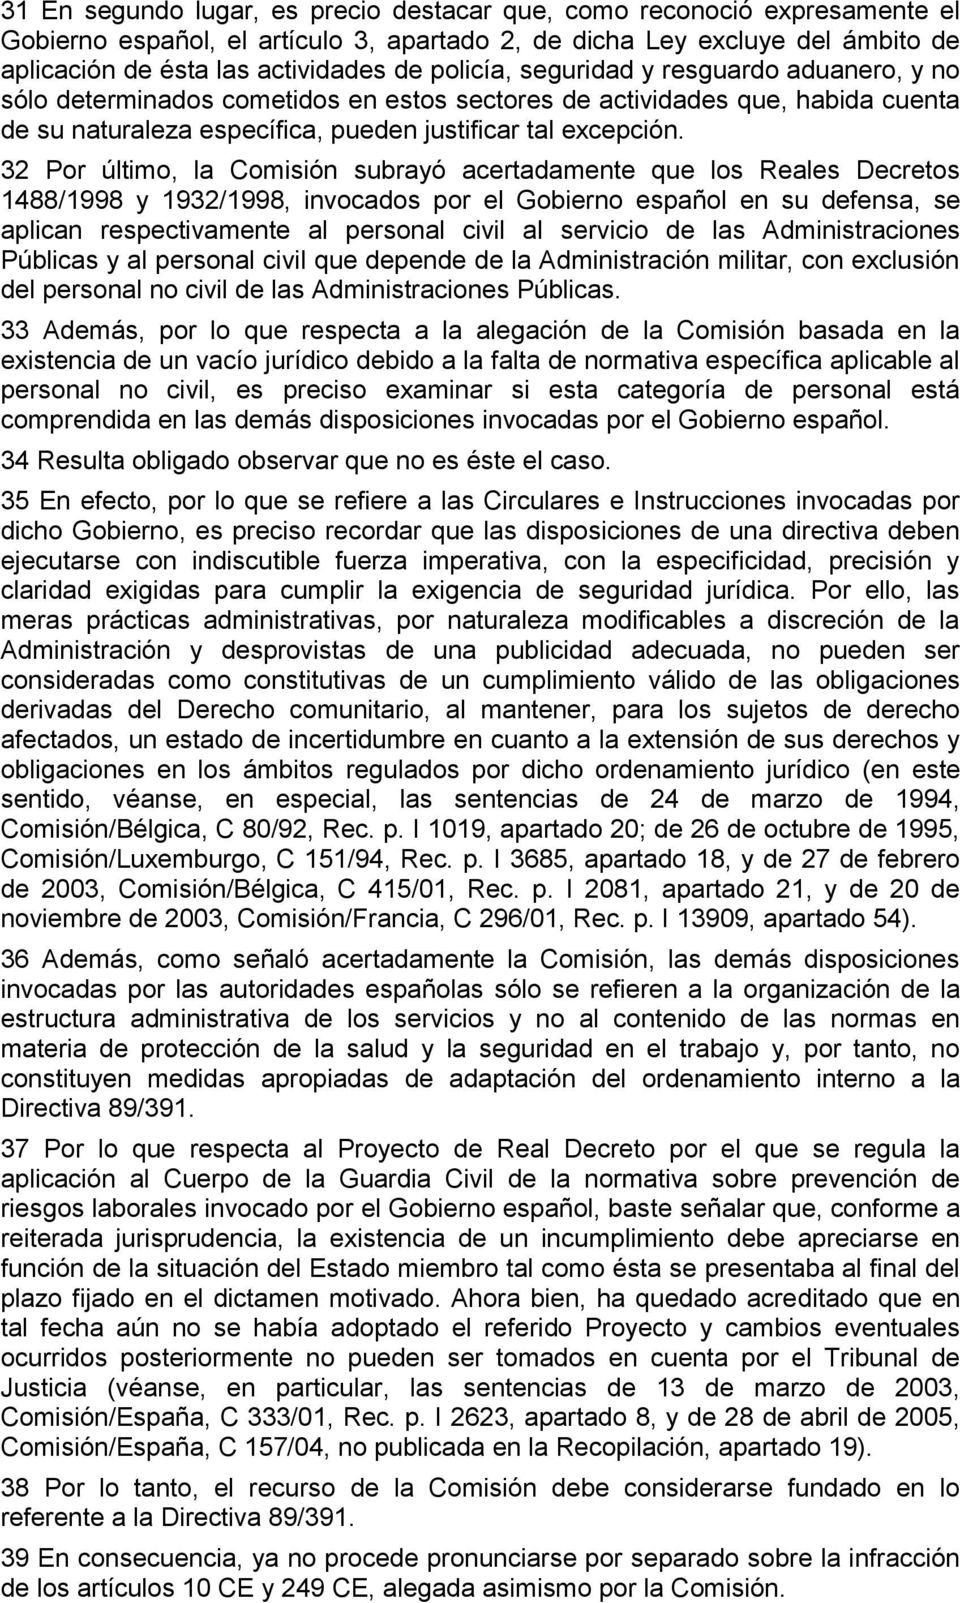 32 Por último, la Comisión subrayó acertadamente que los Reales Decretos 1488/1998 y 1932/1998, invocados por el Gobierno español en su defensa, se aplican respectivamente al personal civil al